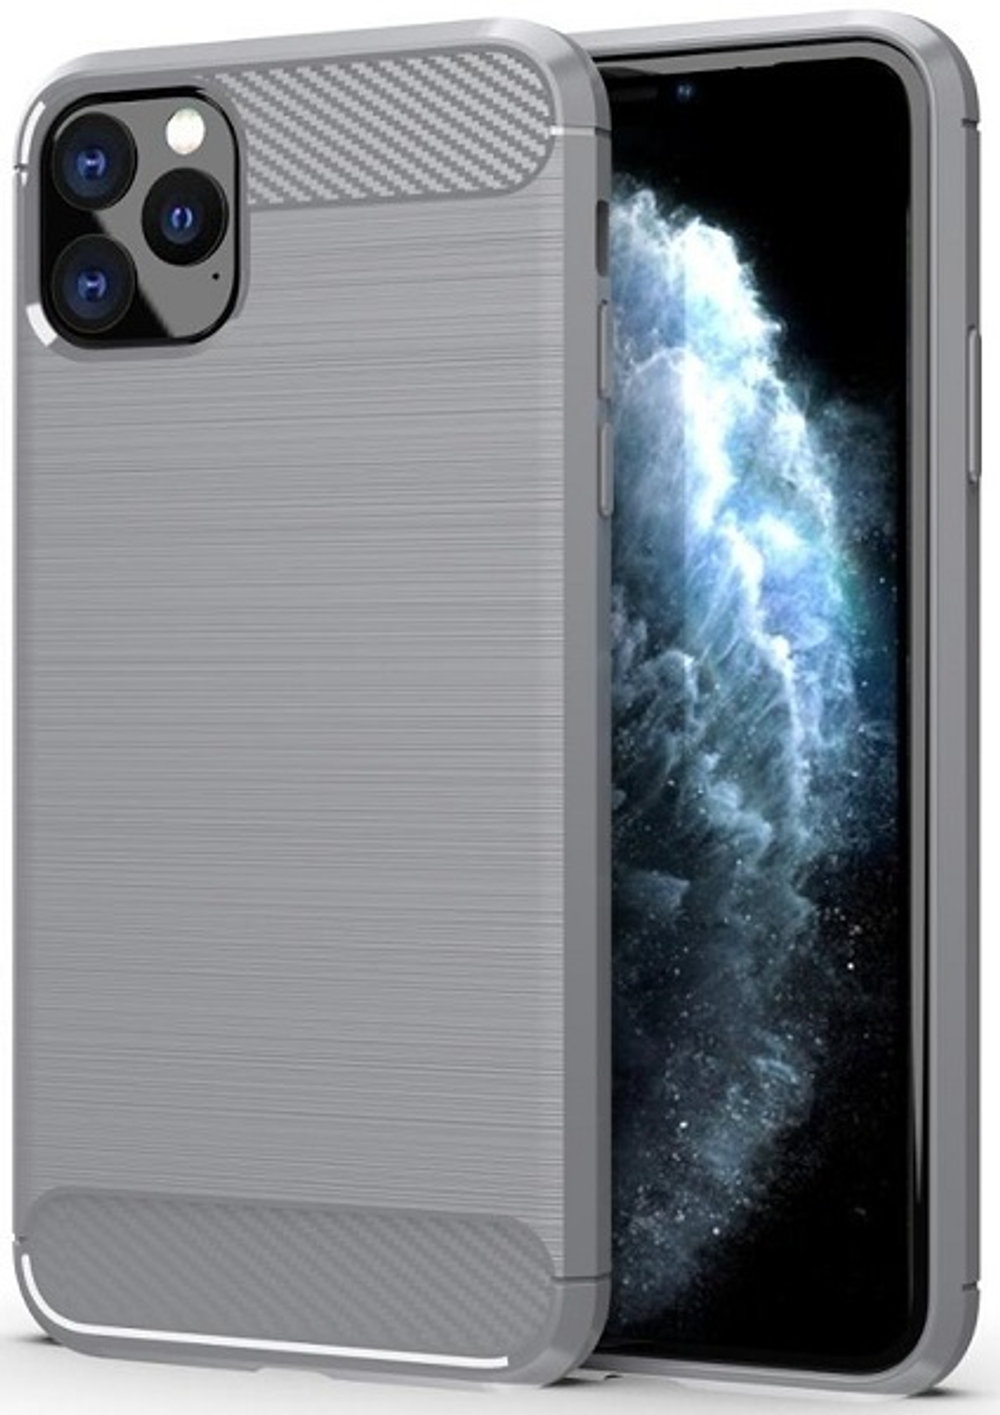 Чехол для iPhone 11 Pro Max цвет Gray (серый), серия Carbon от Caseport